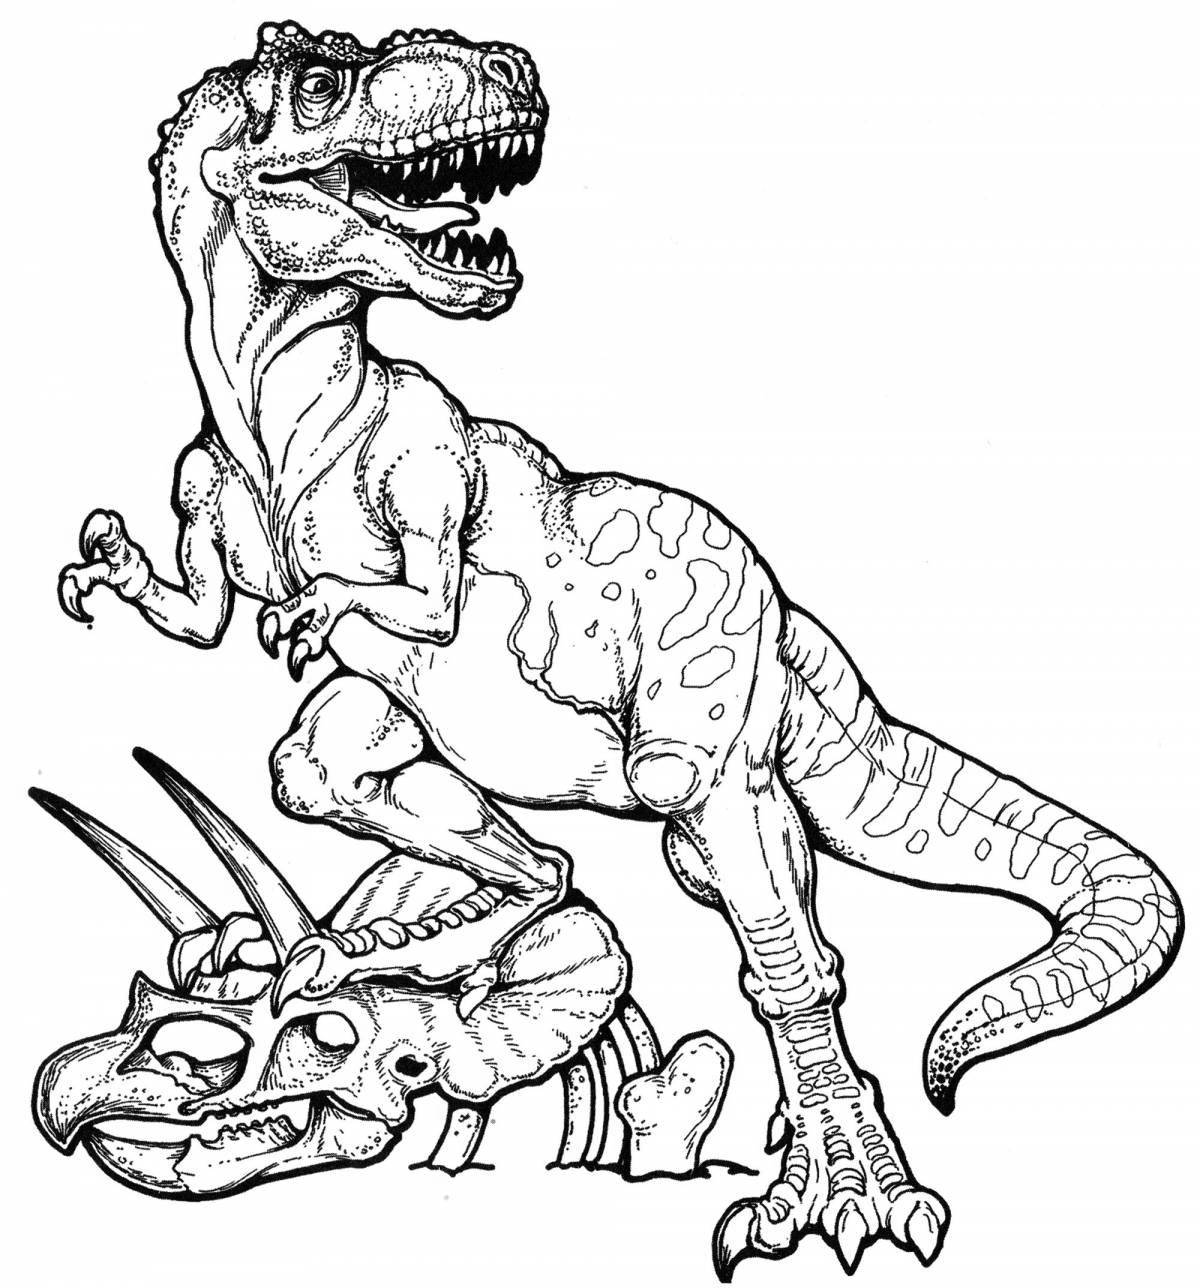 Creative Tarbosaurus coloring book